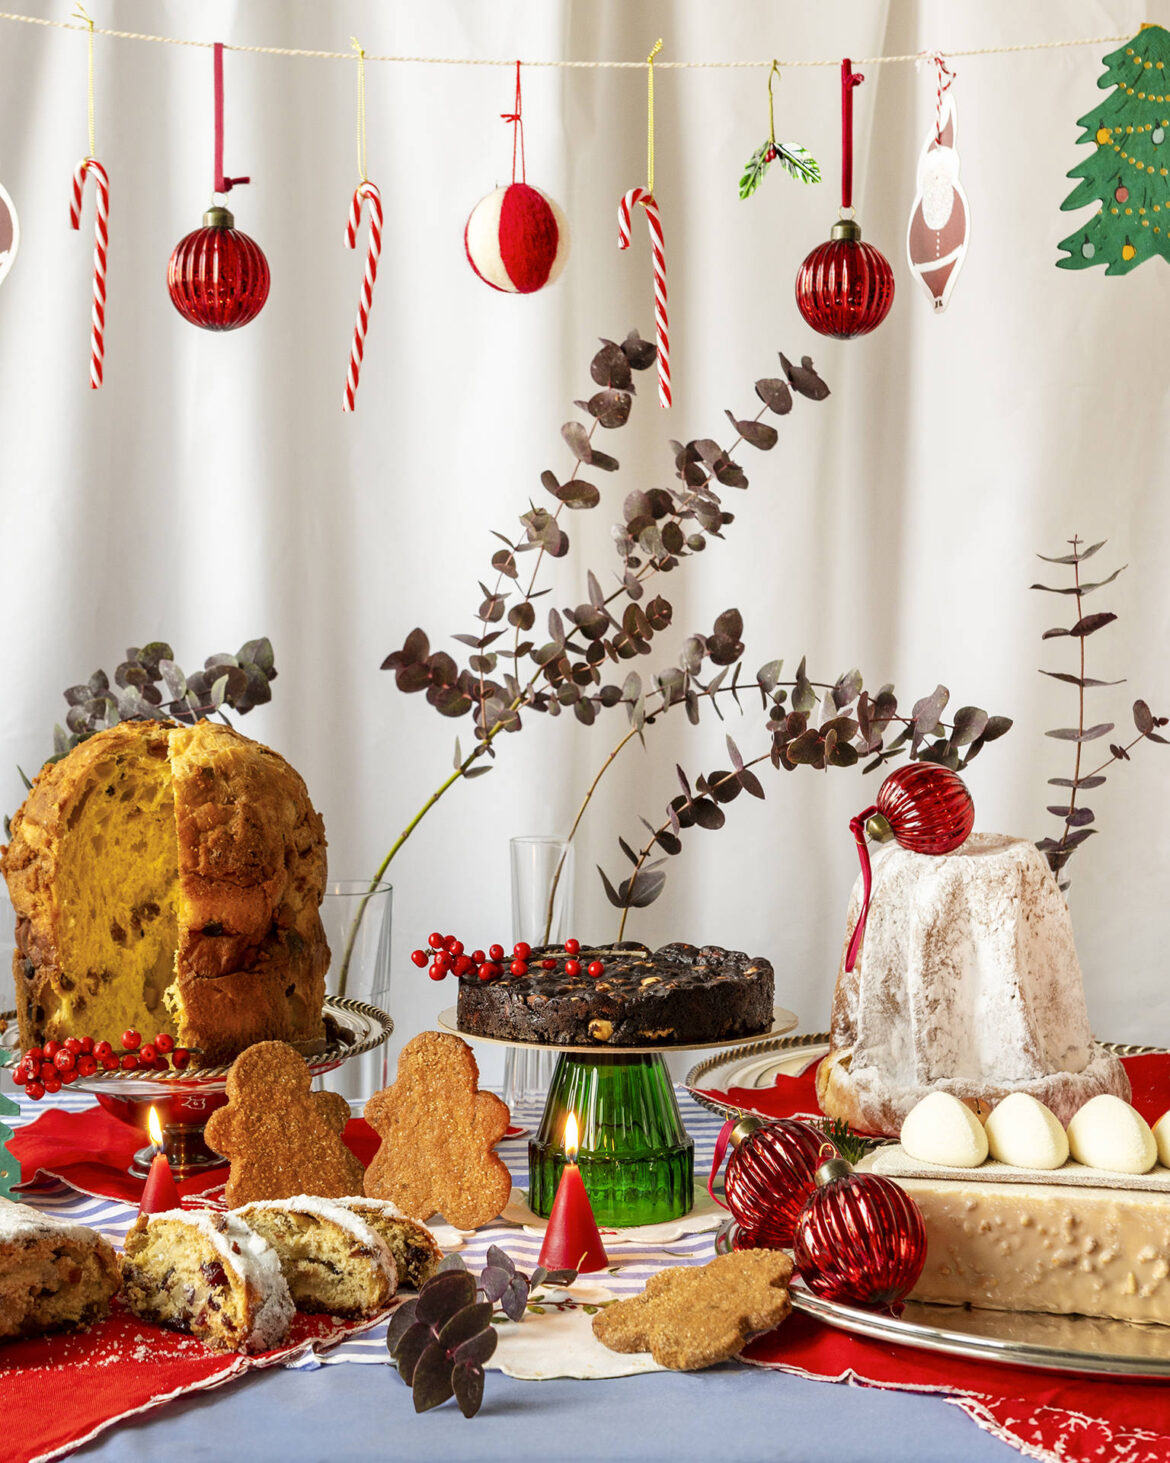 Πανετόνε, στόλεν ή πανφόρτε; Γιορτινά γλυκά του κόσμου και πού θα τα βρεις στην Αθήνα